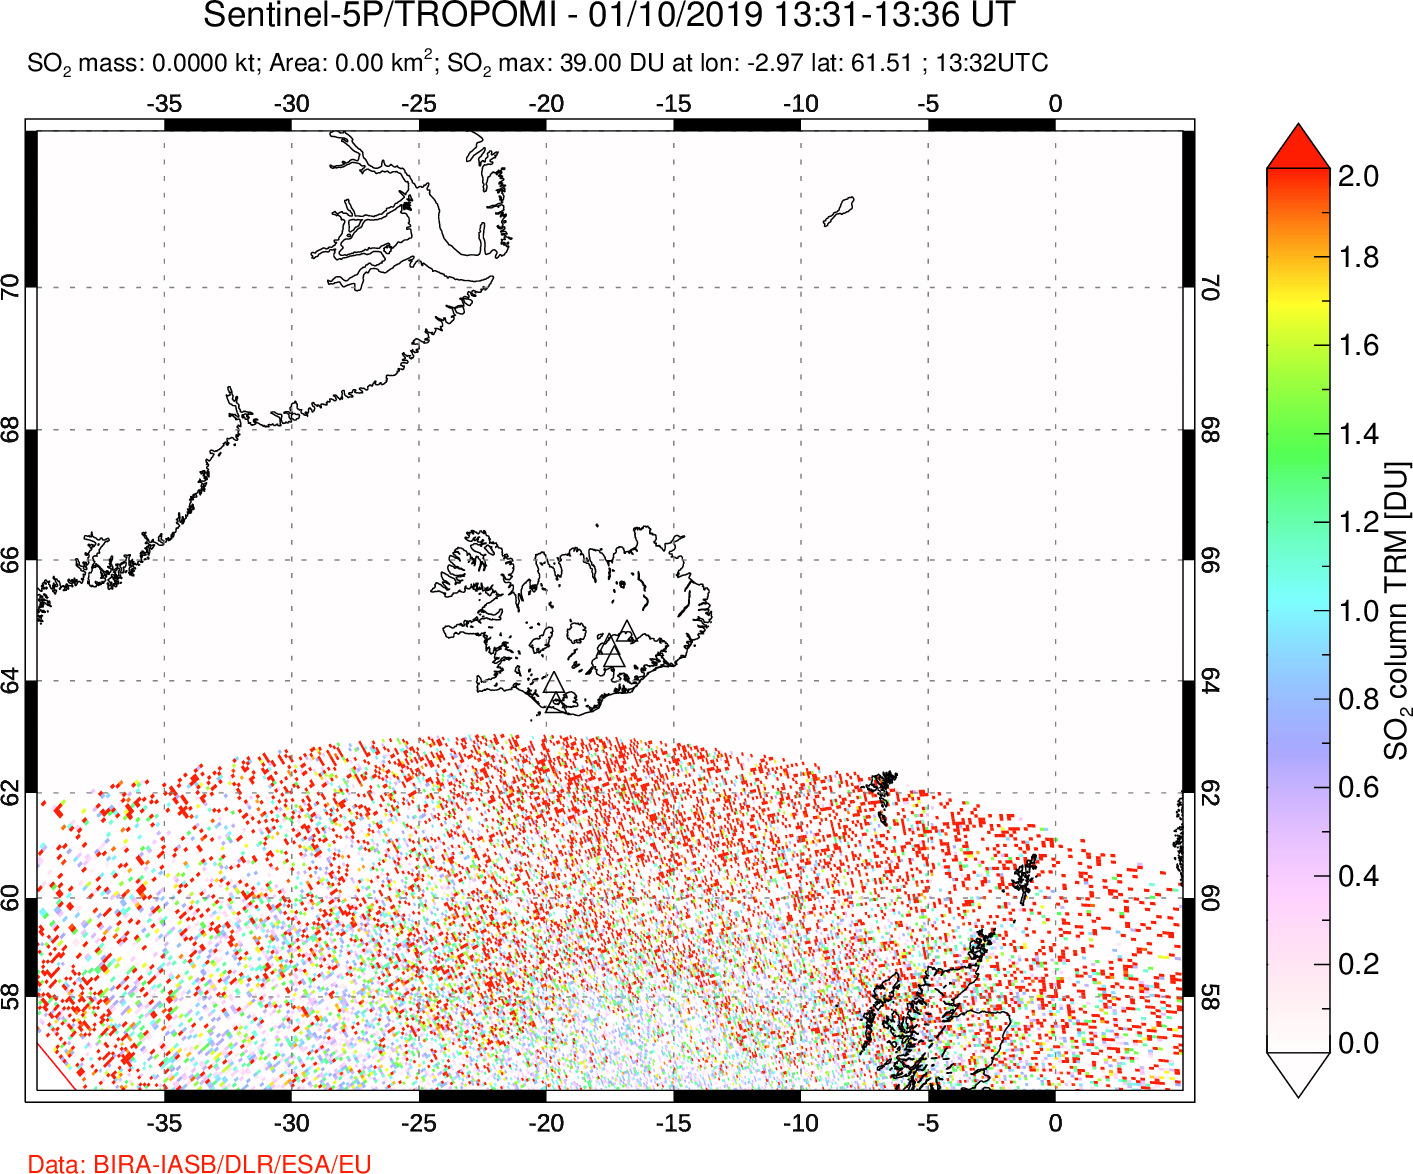 A sulfur dioxide image over Iceland on Jan 10, 2019.